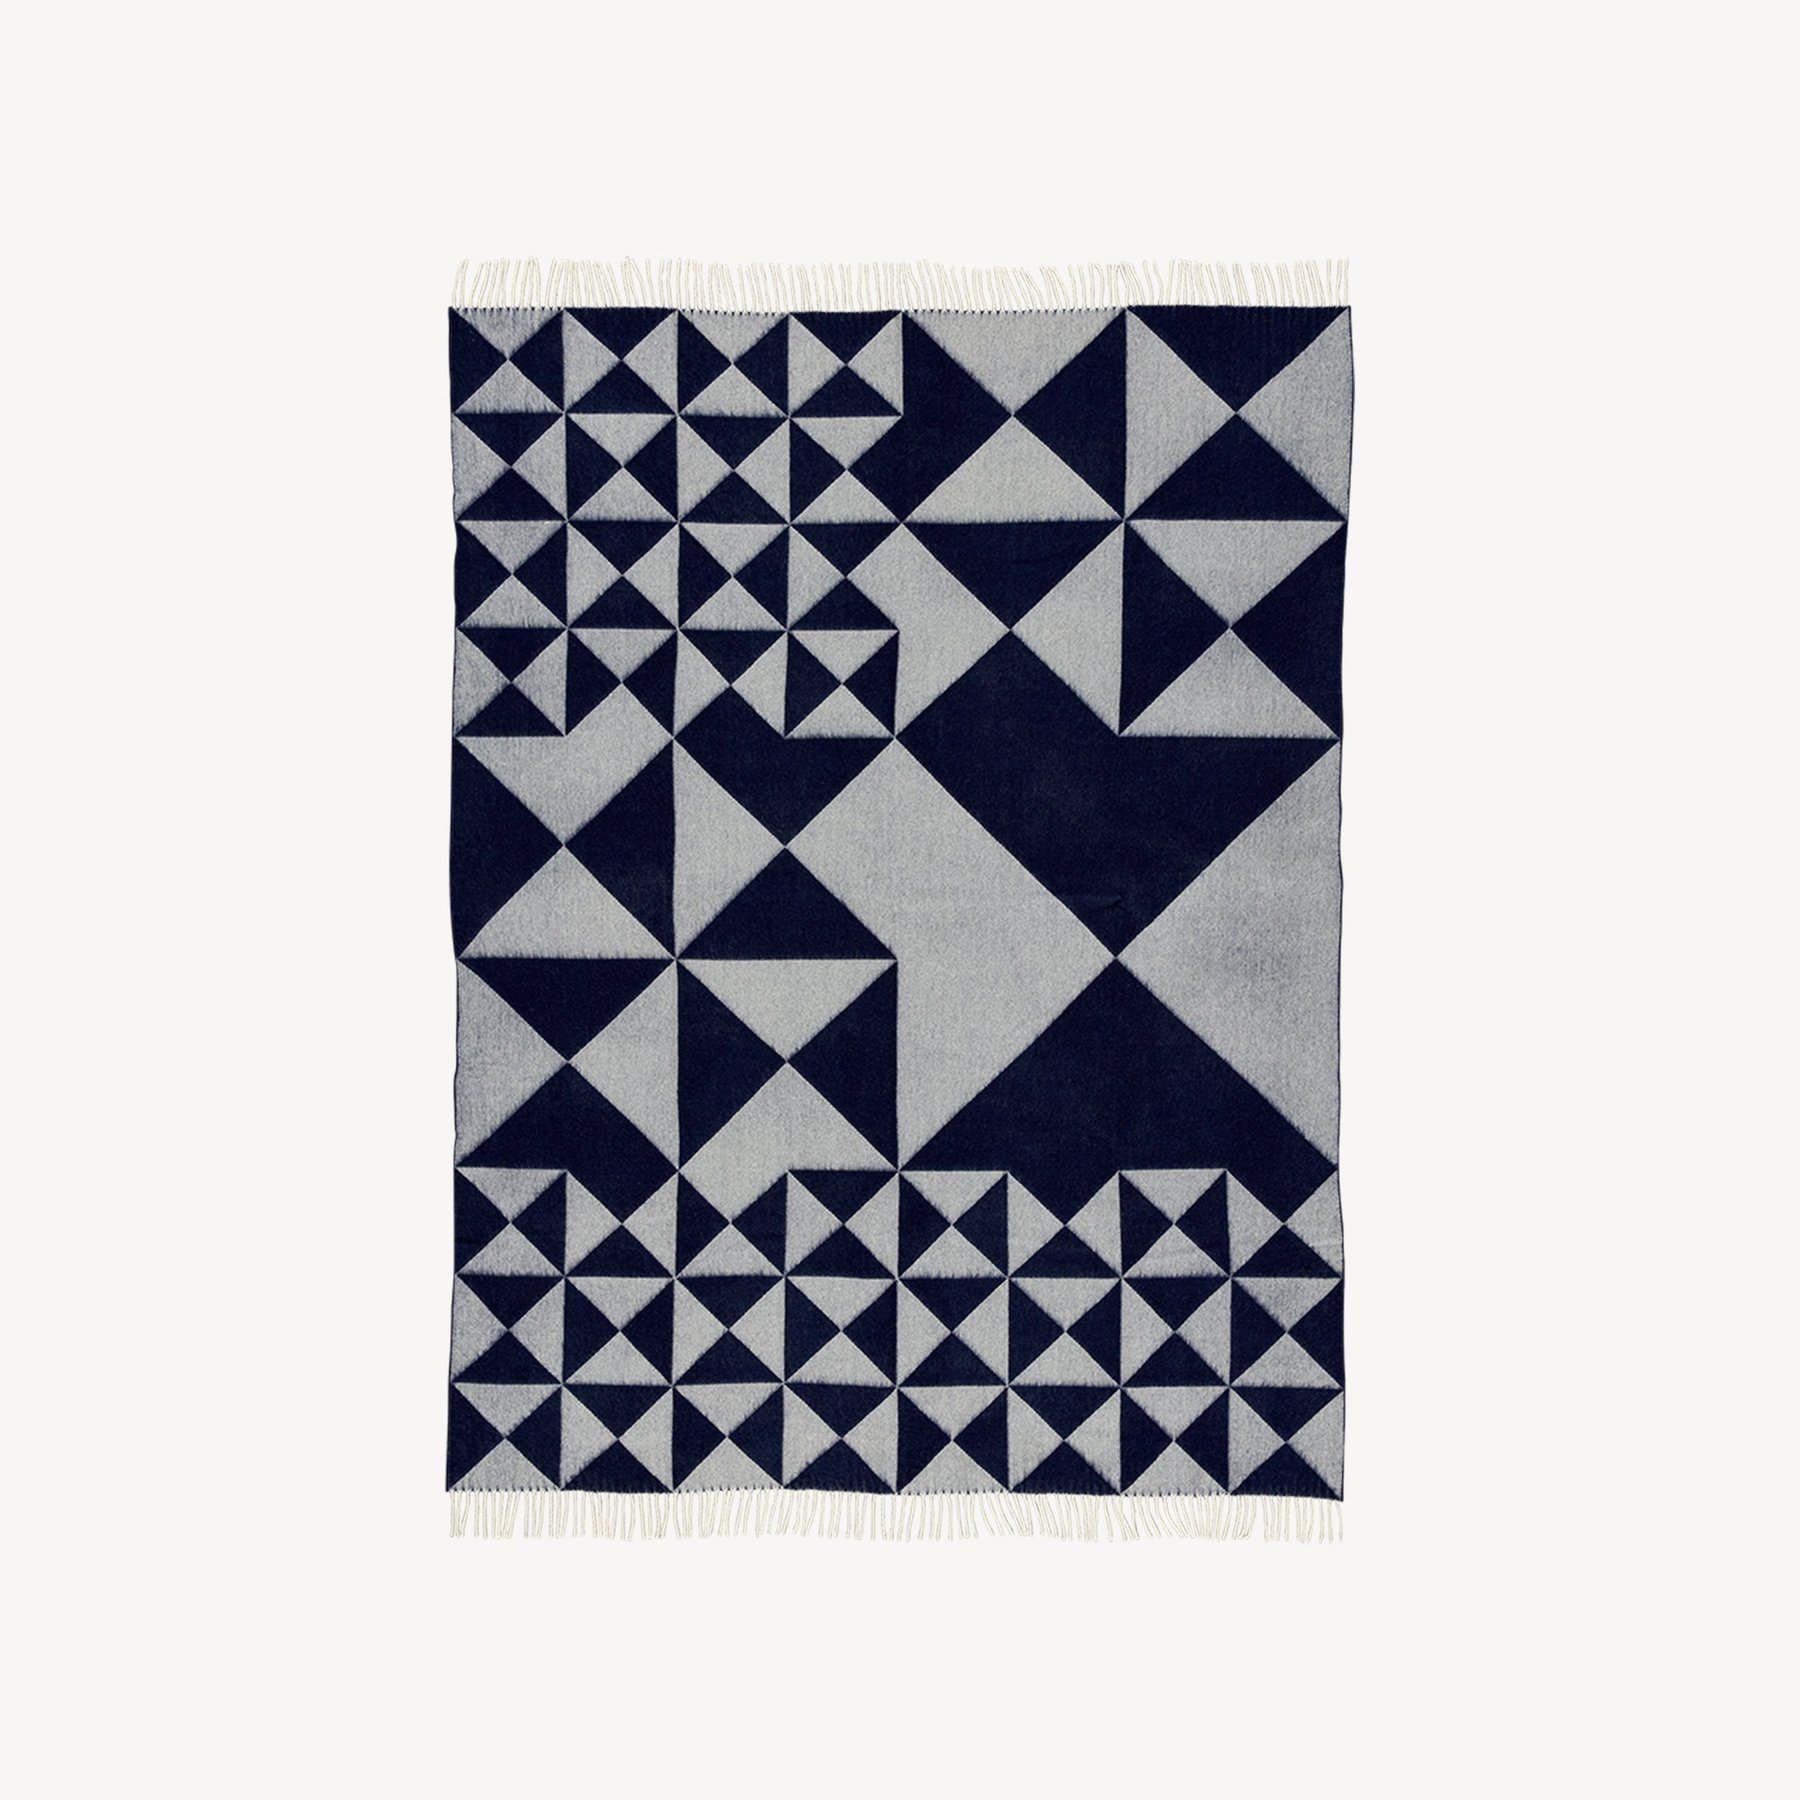 丹麦家具Verpan的MIRROR THROW BLUE 毯子 主图